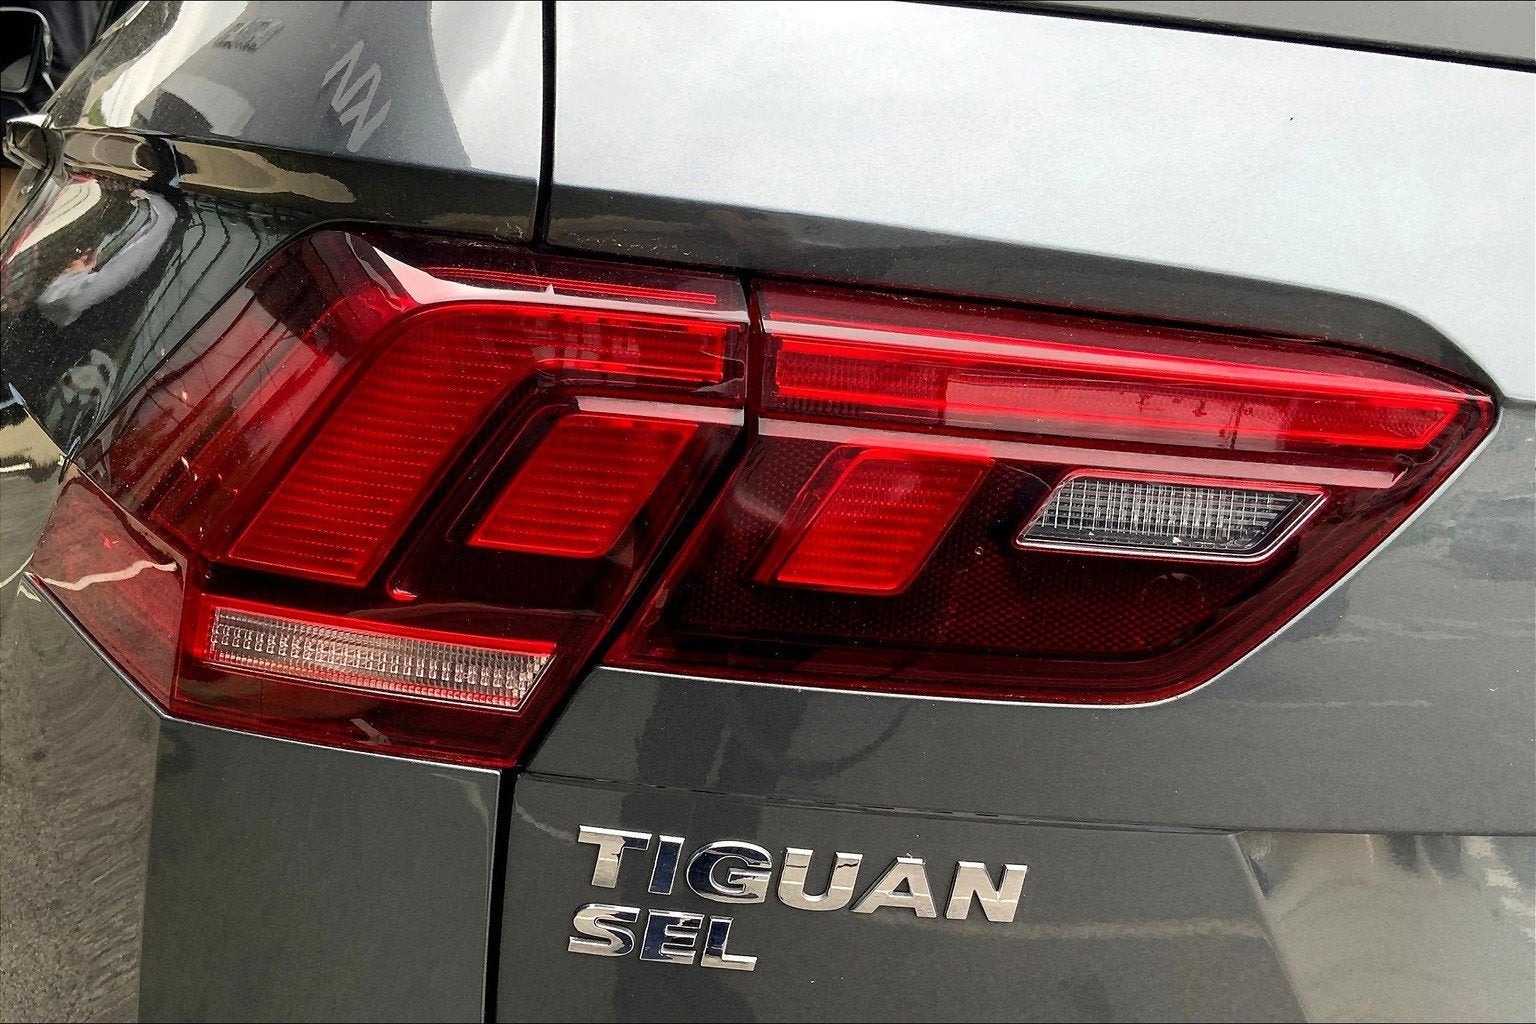 2019 Volkswagen Tiguan SE